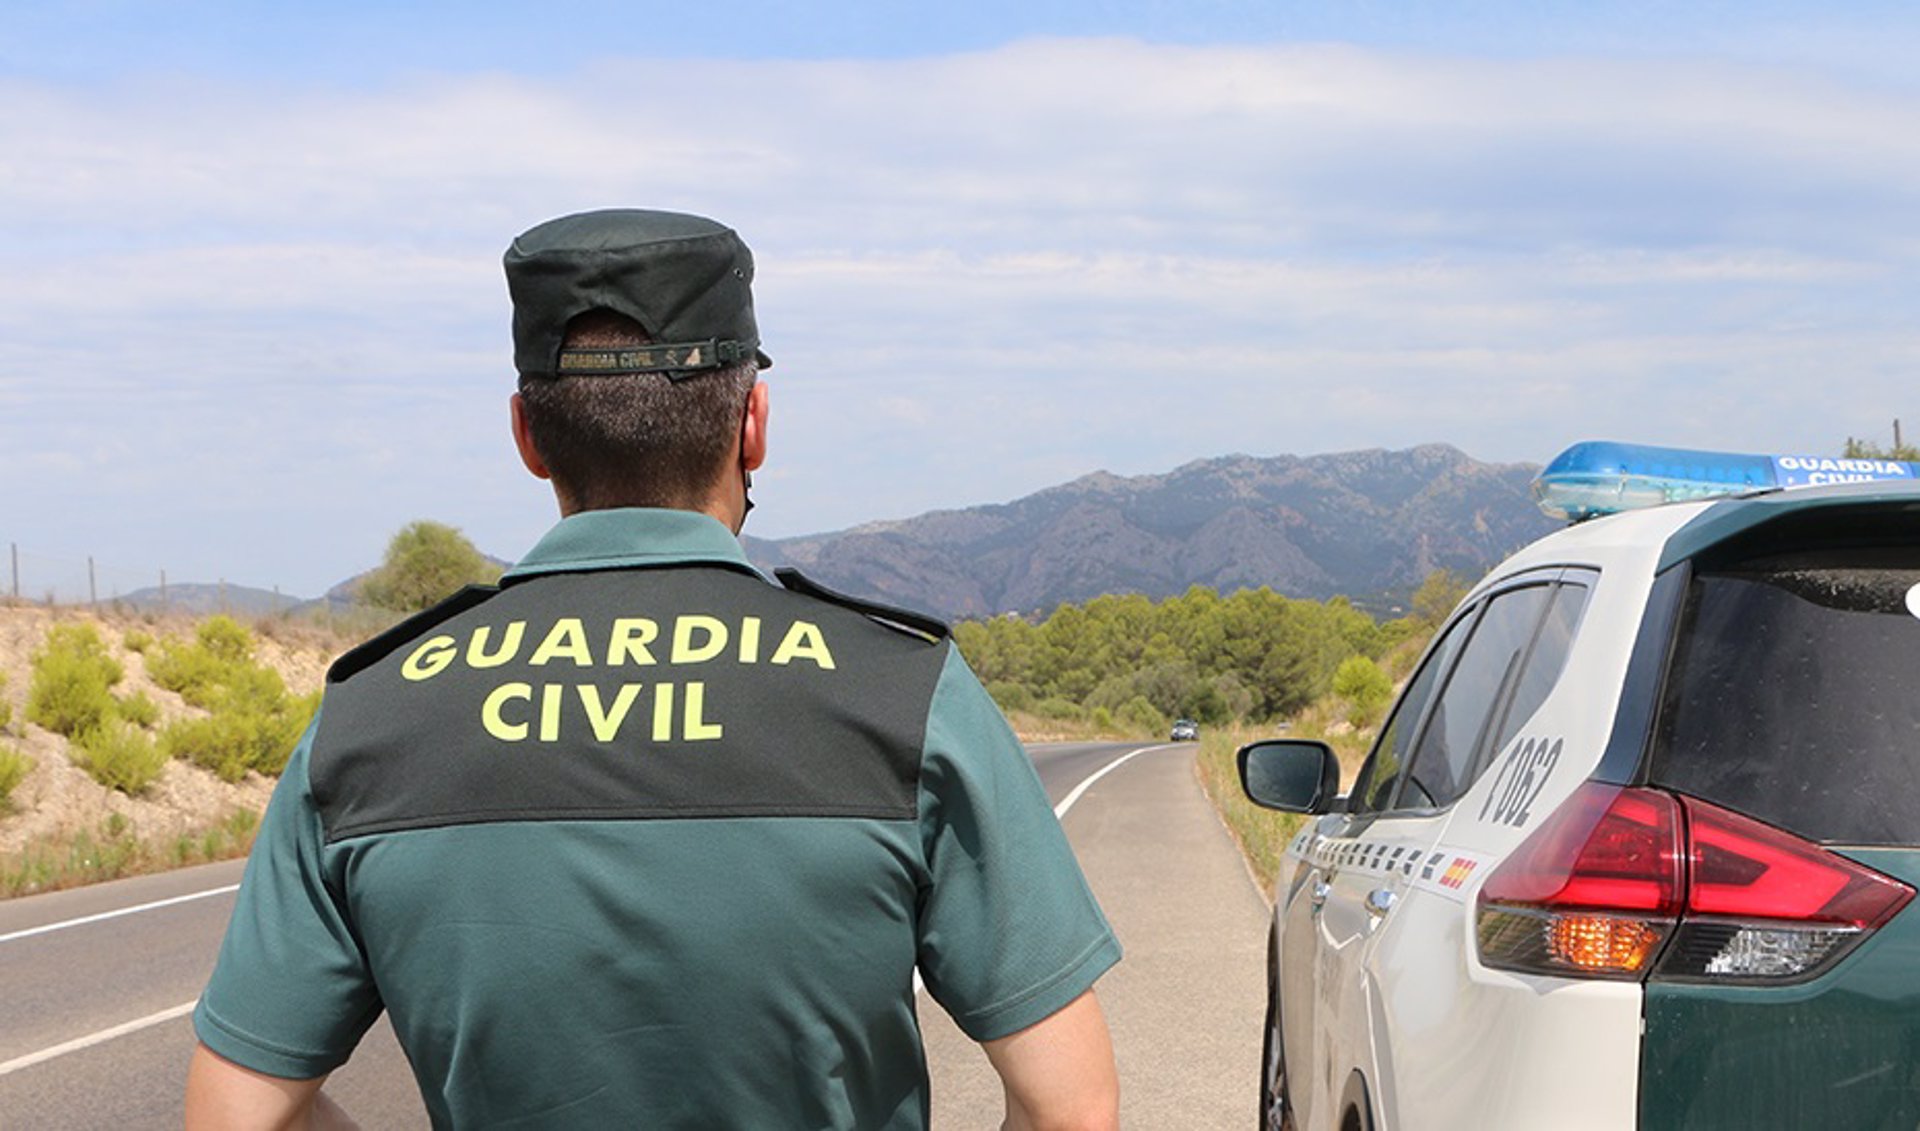 16/07/2022 Un agente de la Guardia Civil junto a un vehículo en una carretera. (Foto de archivo). SOCIEDAD GUARDIA CIVIL